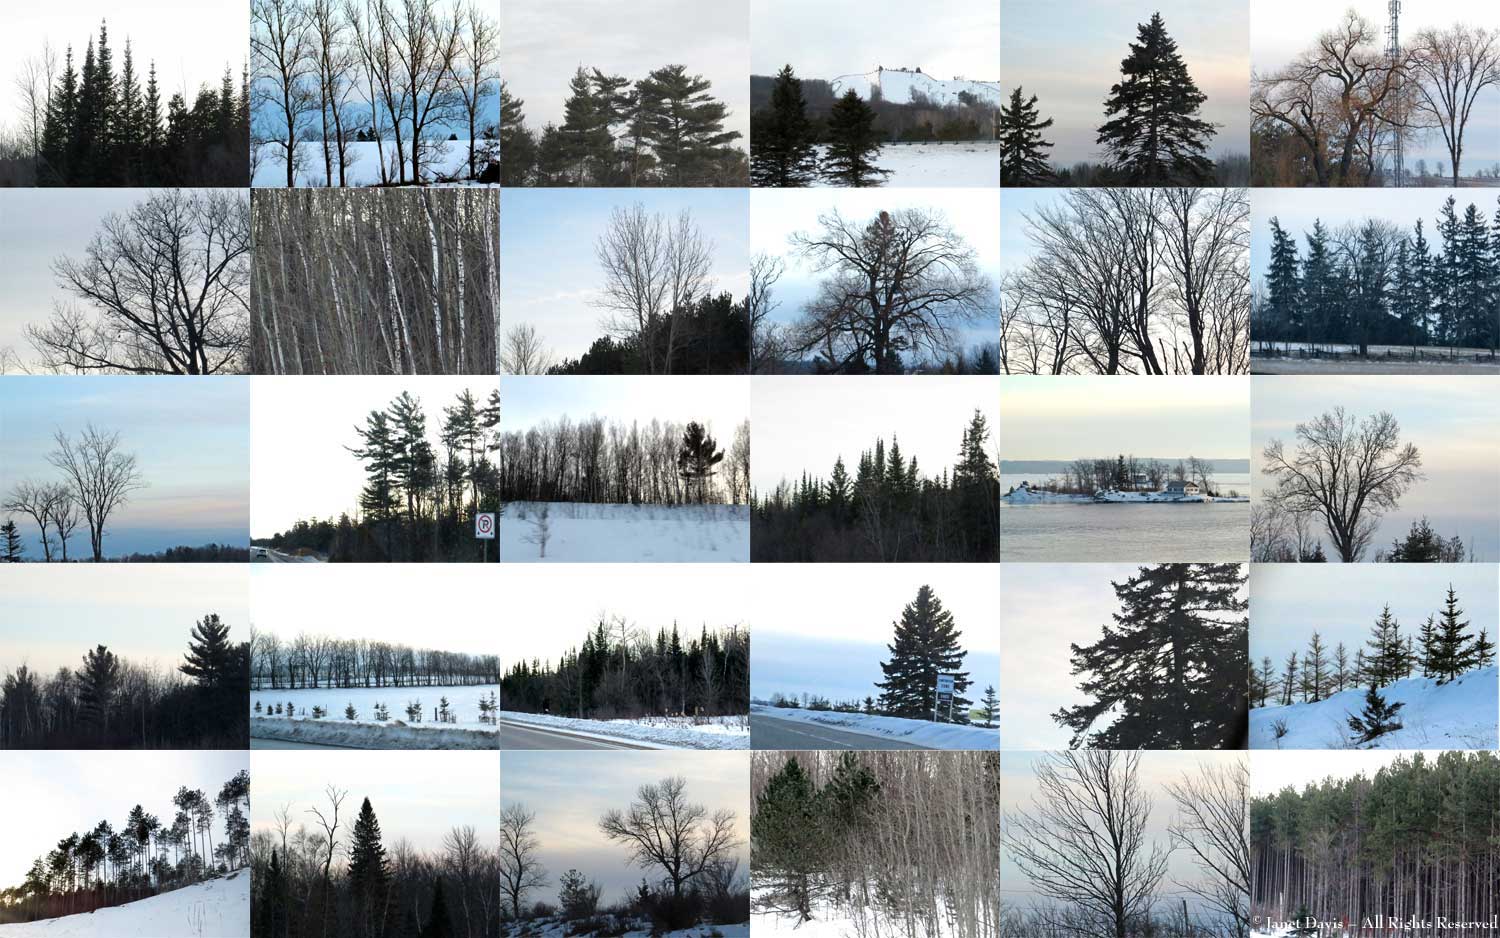 Winter Tree skeletons-Highway 400-Ontario